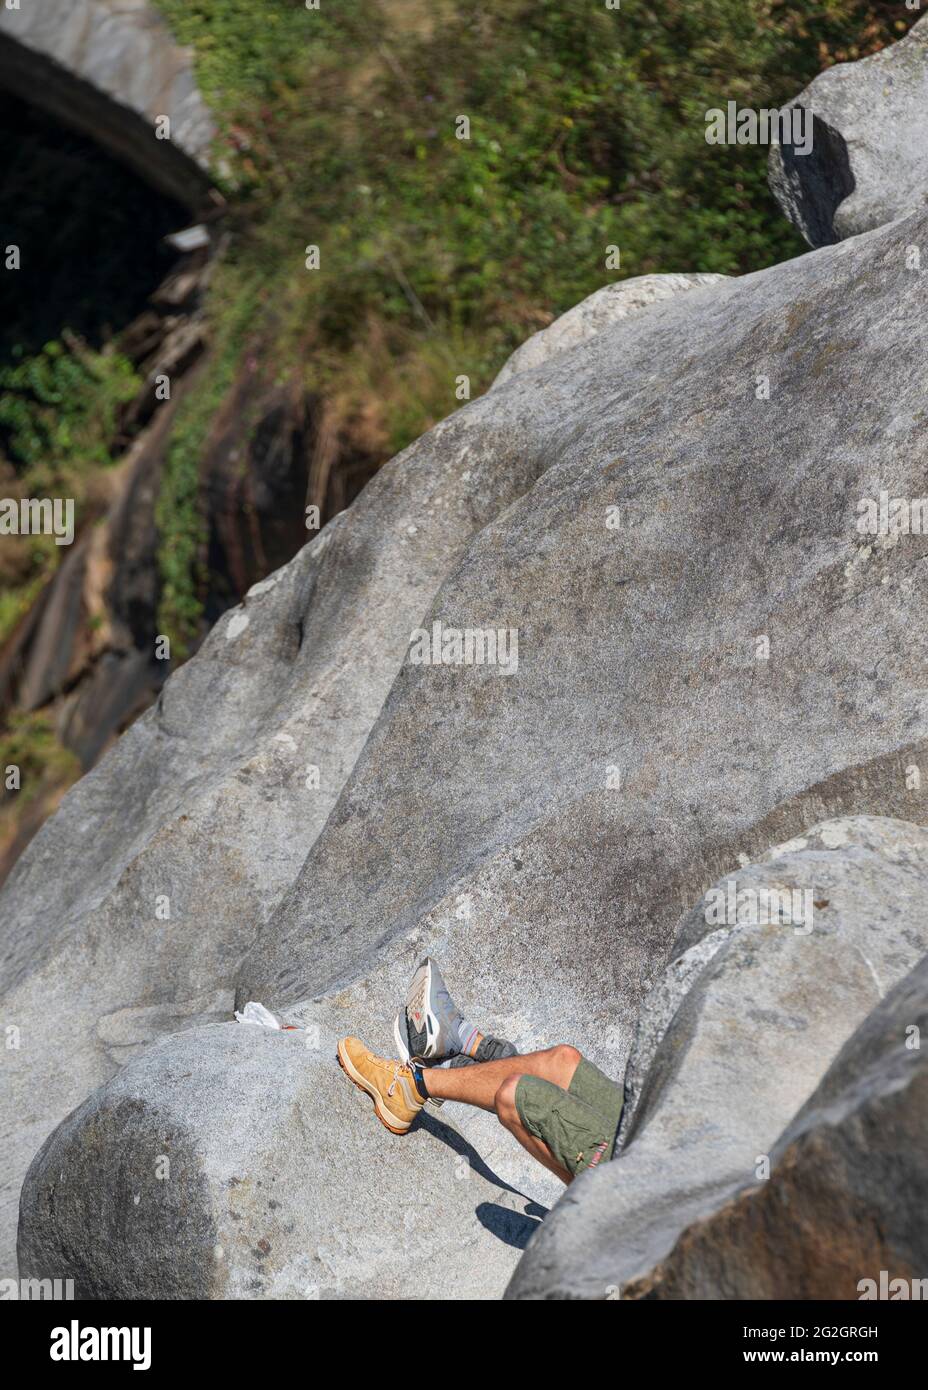 Impressionen von Lavertezzo im Verzasca-Tal, Bezirk Locarno, Kanton Tessin in der Schweiz: Beliebtes Ausflugsziel zum Wandern, Flusstauchen und Schwimmen. Zwei Männer entspannen sich in der Sonne auf den Granitfelsen unter der Brücke, nur ihre Beine sind sichtbar. Stockfoto